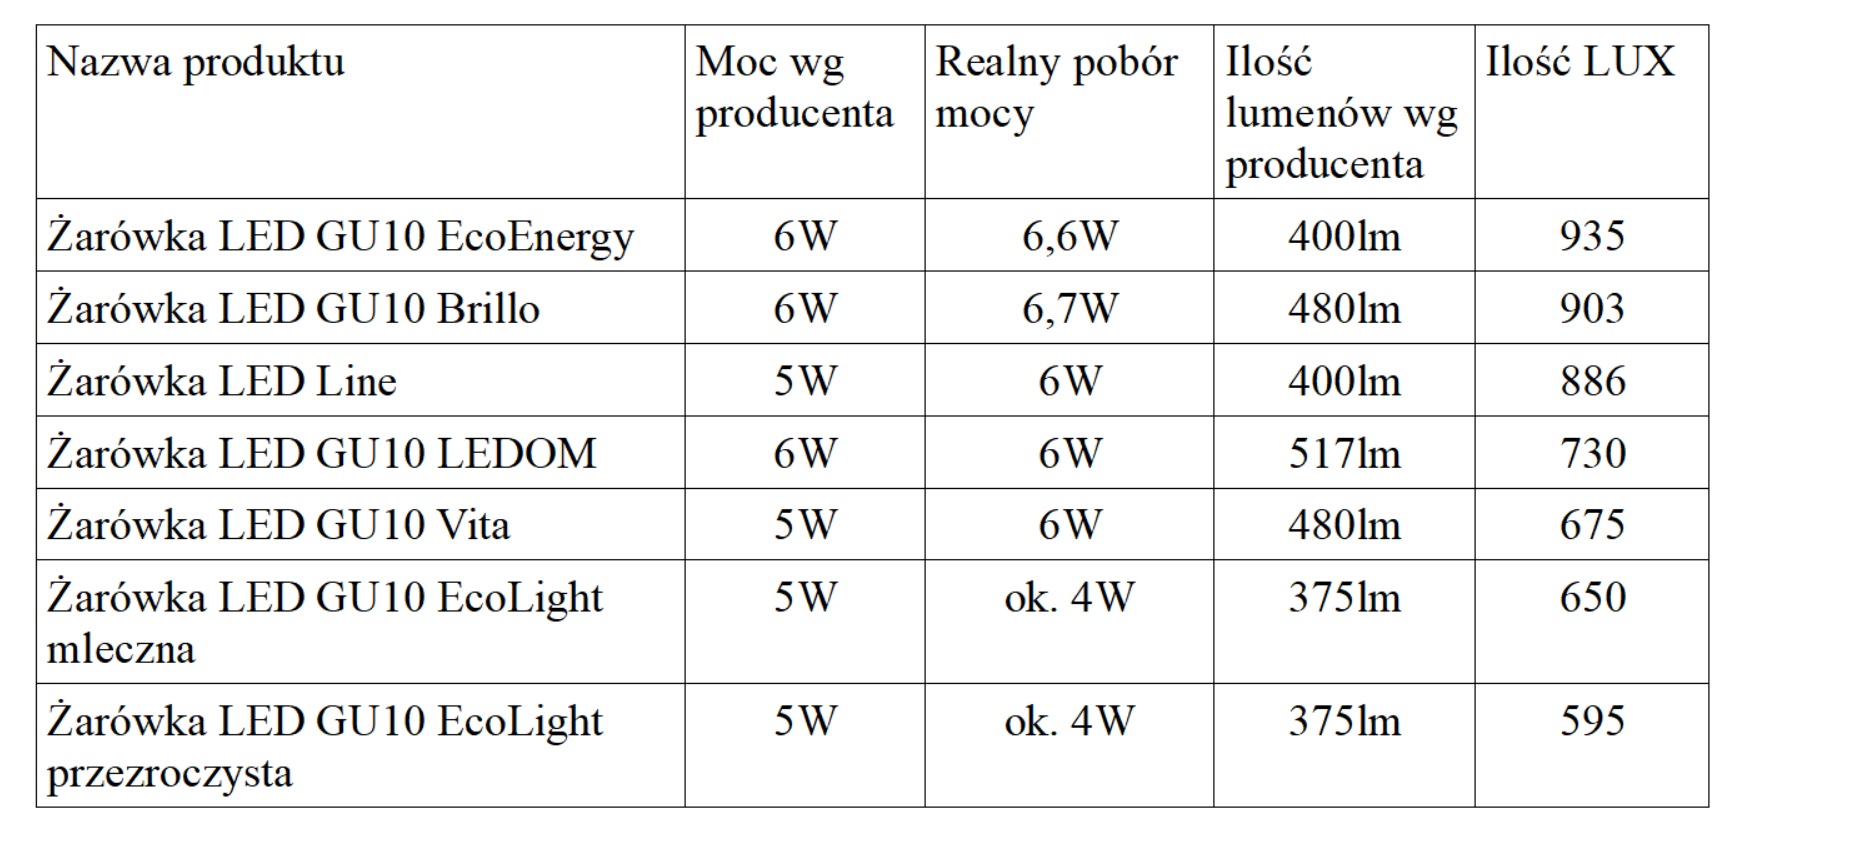 Ranking żarówek LED z gwintem GU10